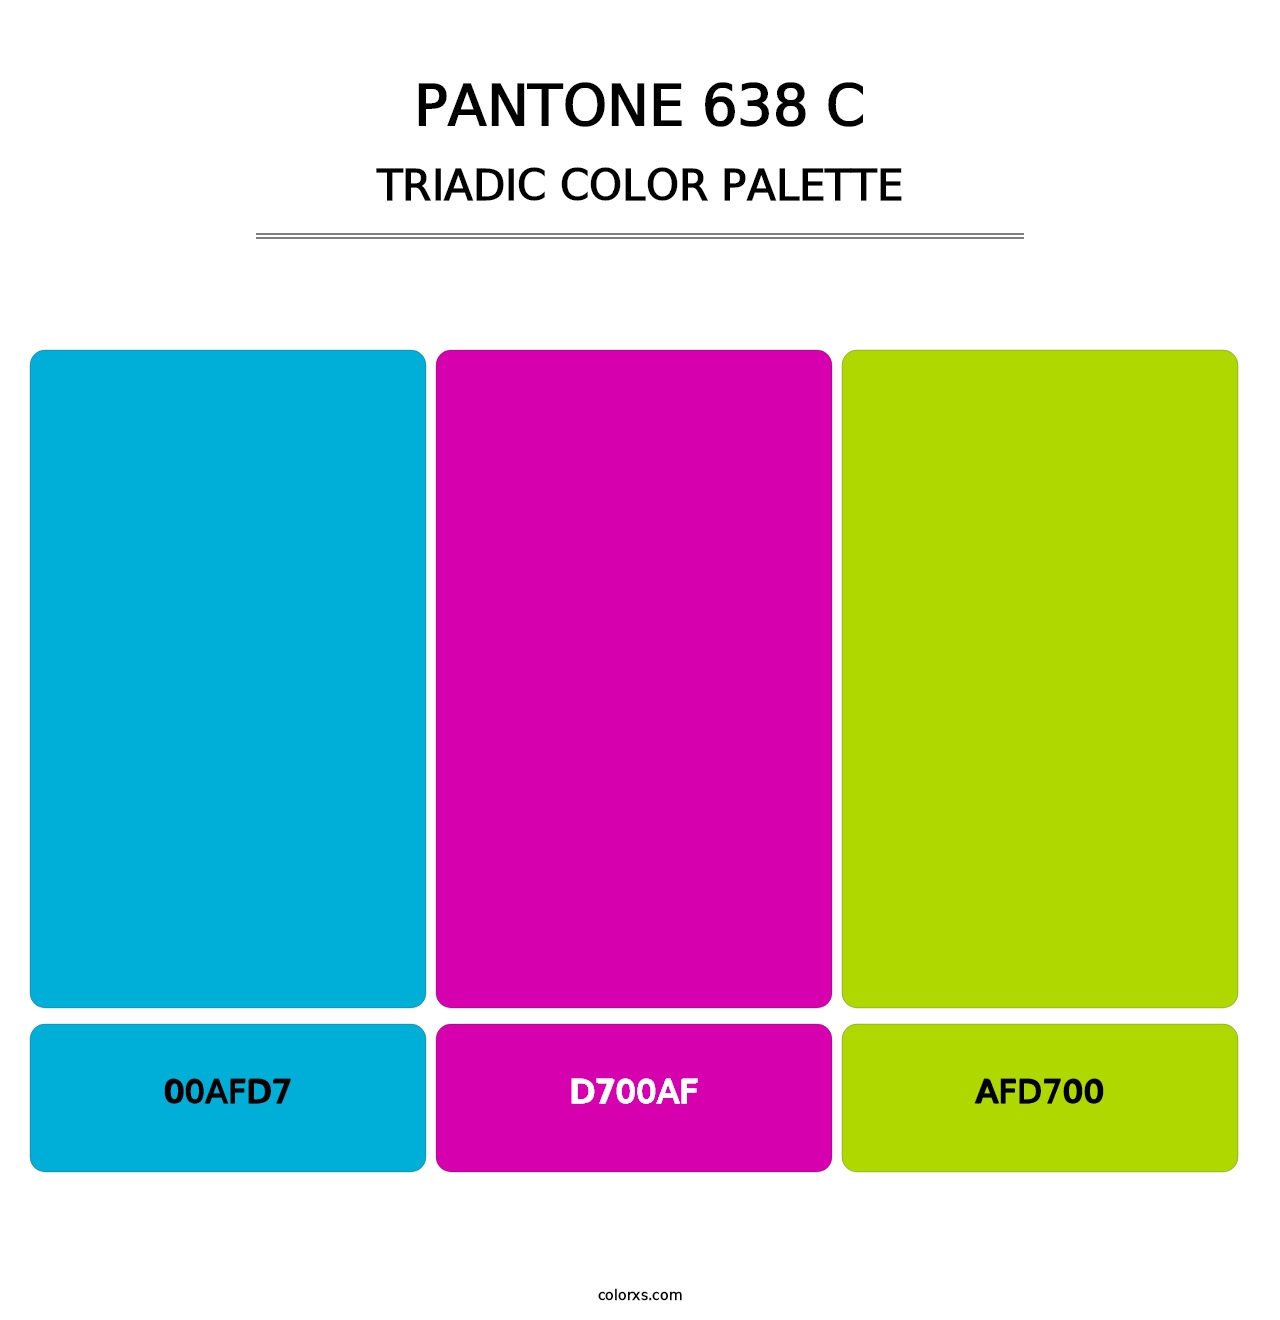 PANTONE 638 C - Triadic Color Palette